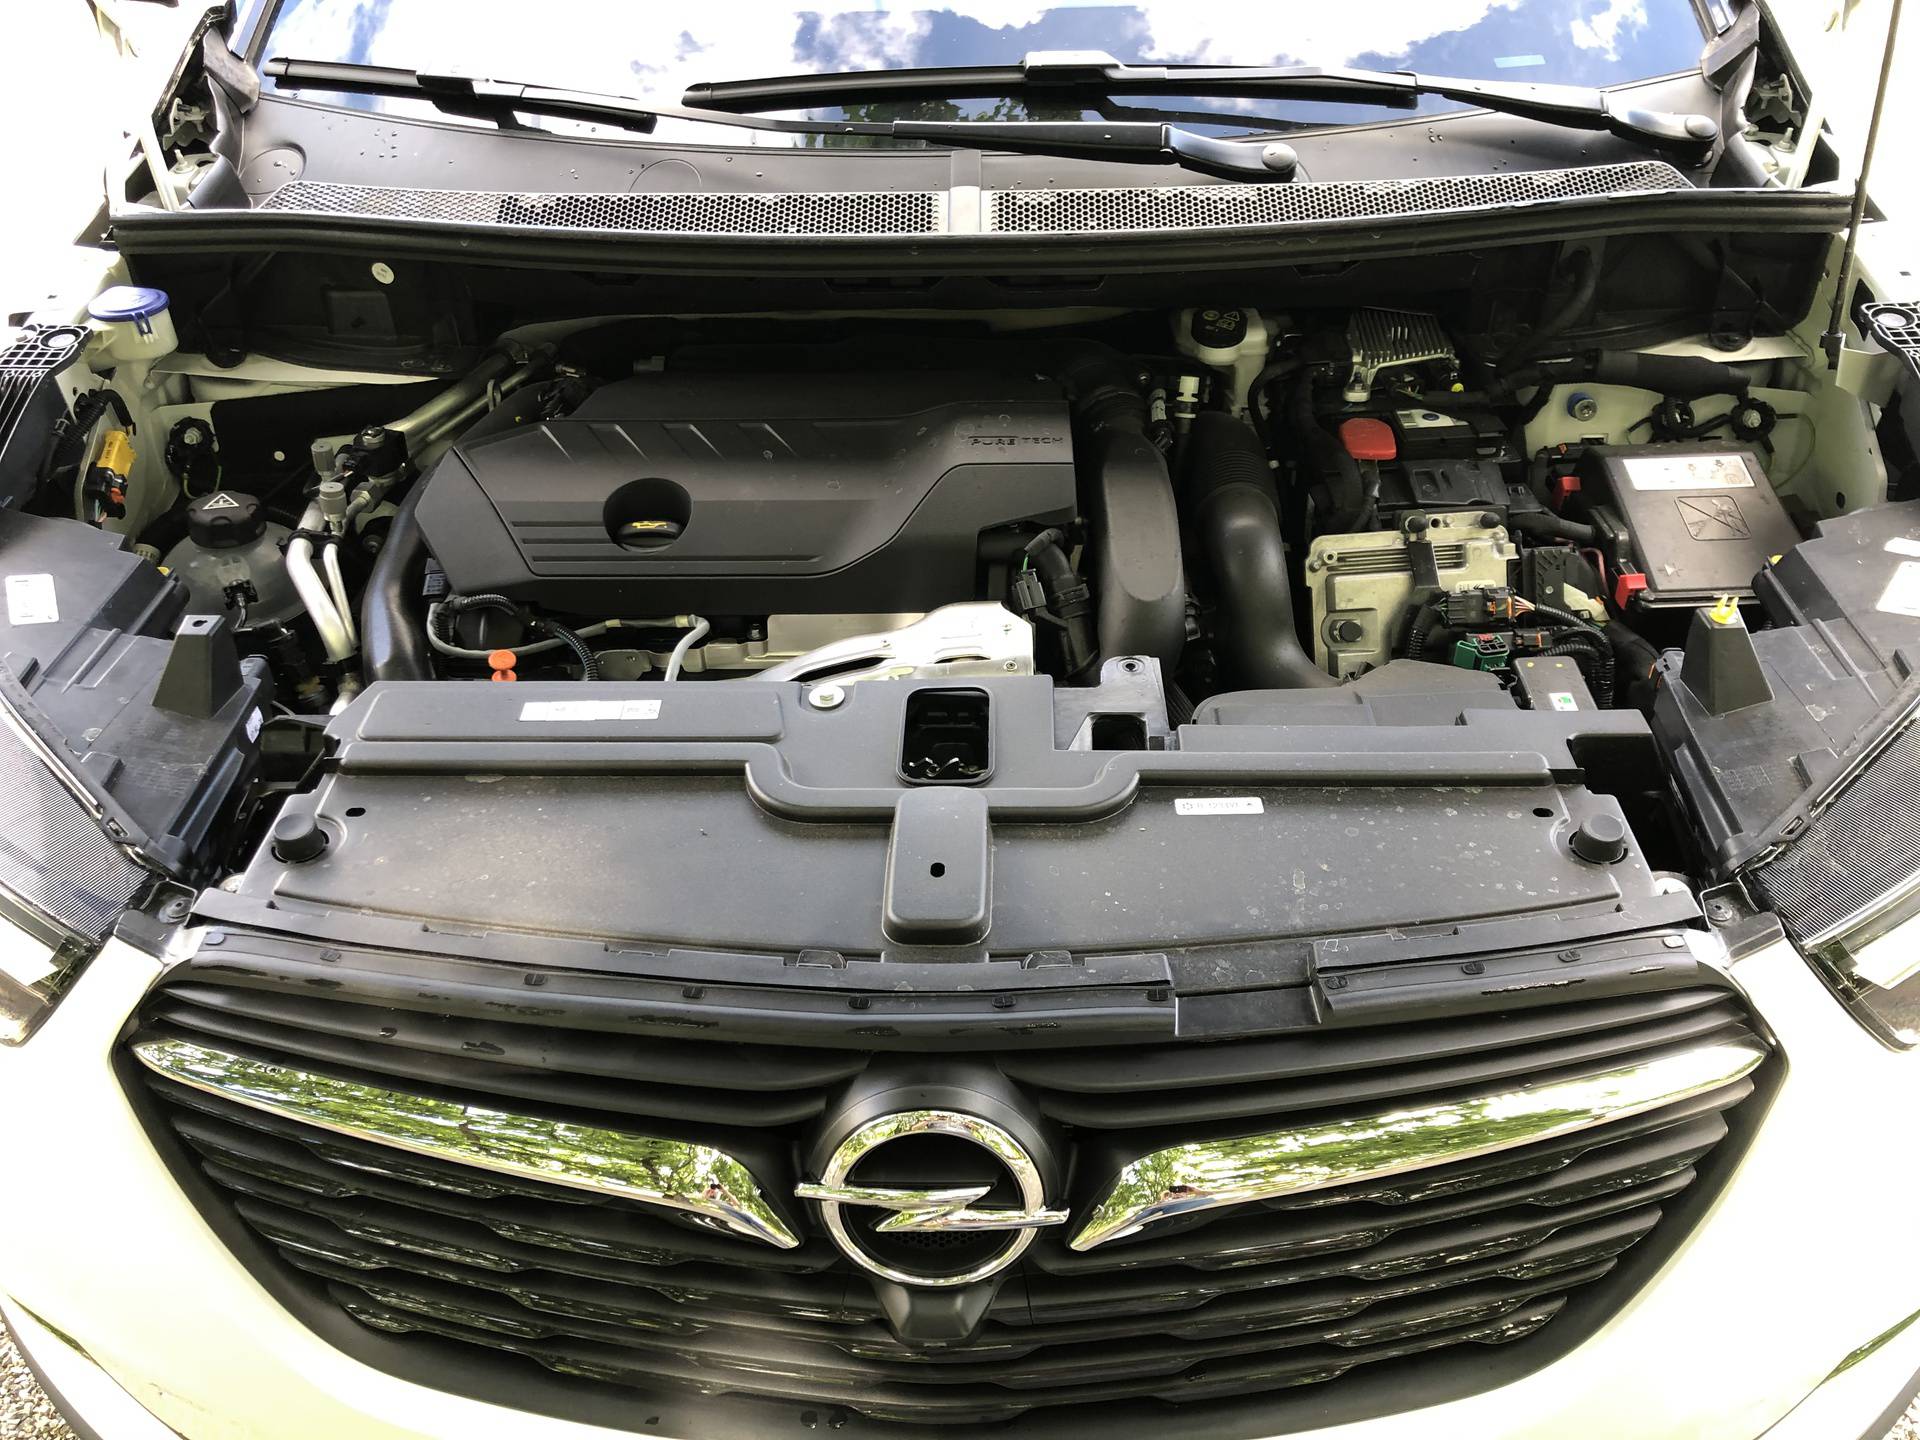 Opel Grandland X Hybrid 4 može trošiti manje od 3 litre, a juriti poput sportskog auta